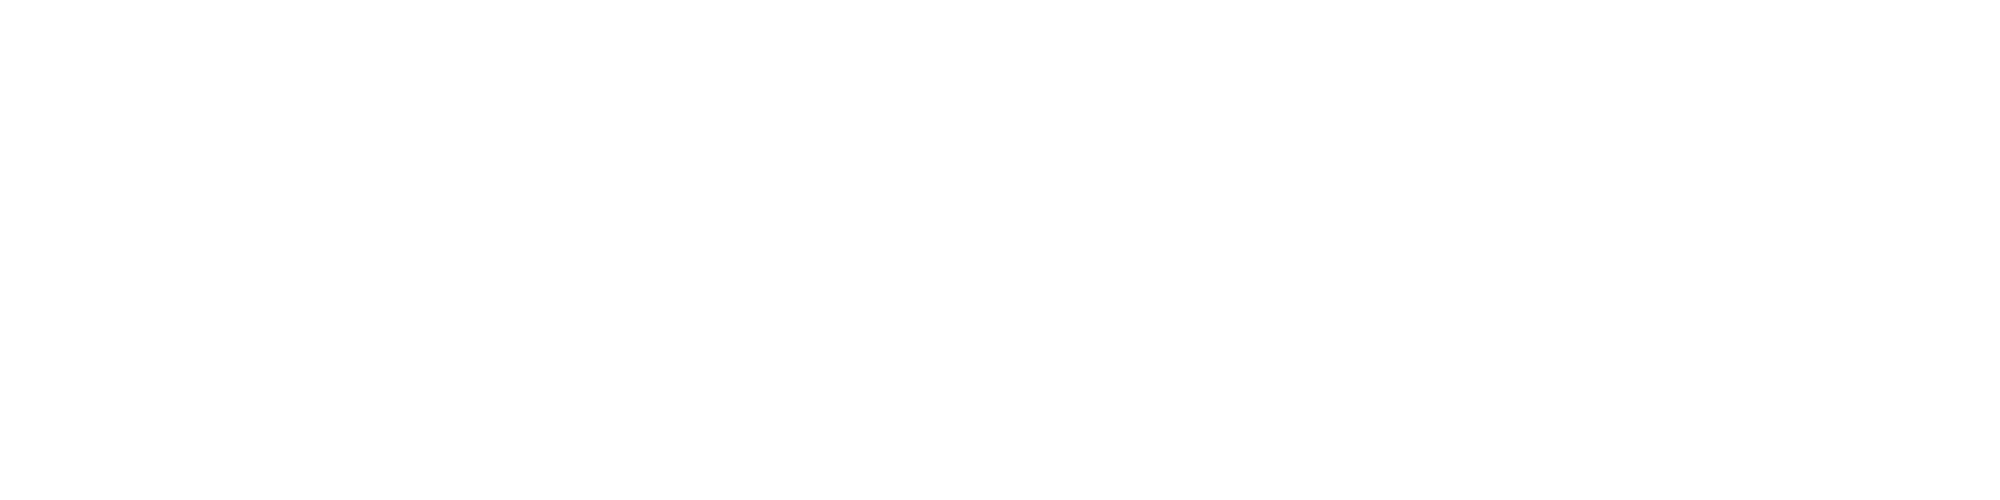 Max Mara Logo - Max mara logo png 4 » PNG Image